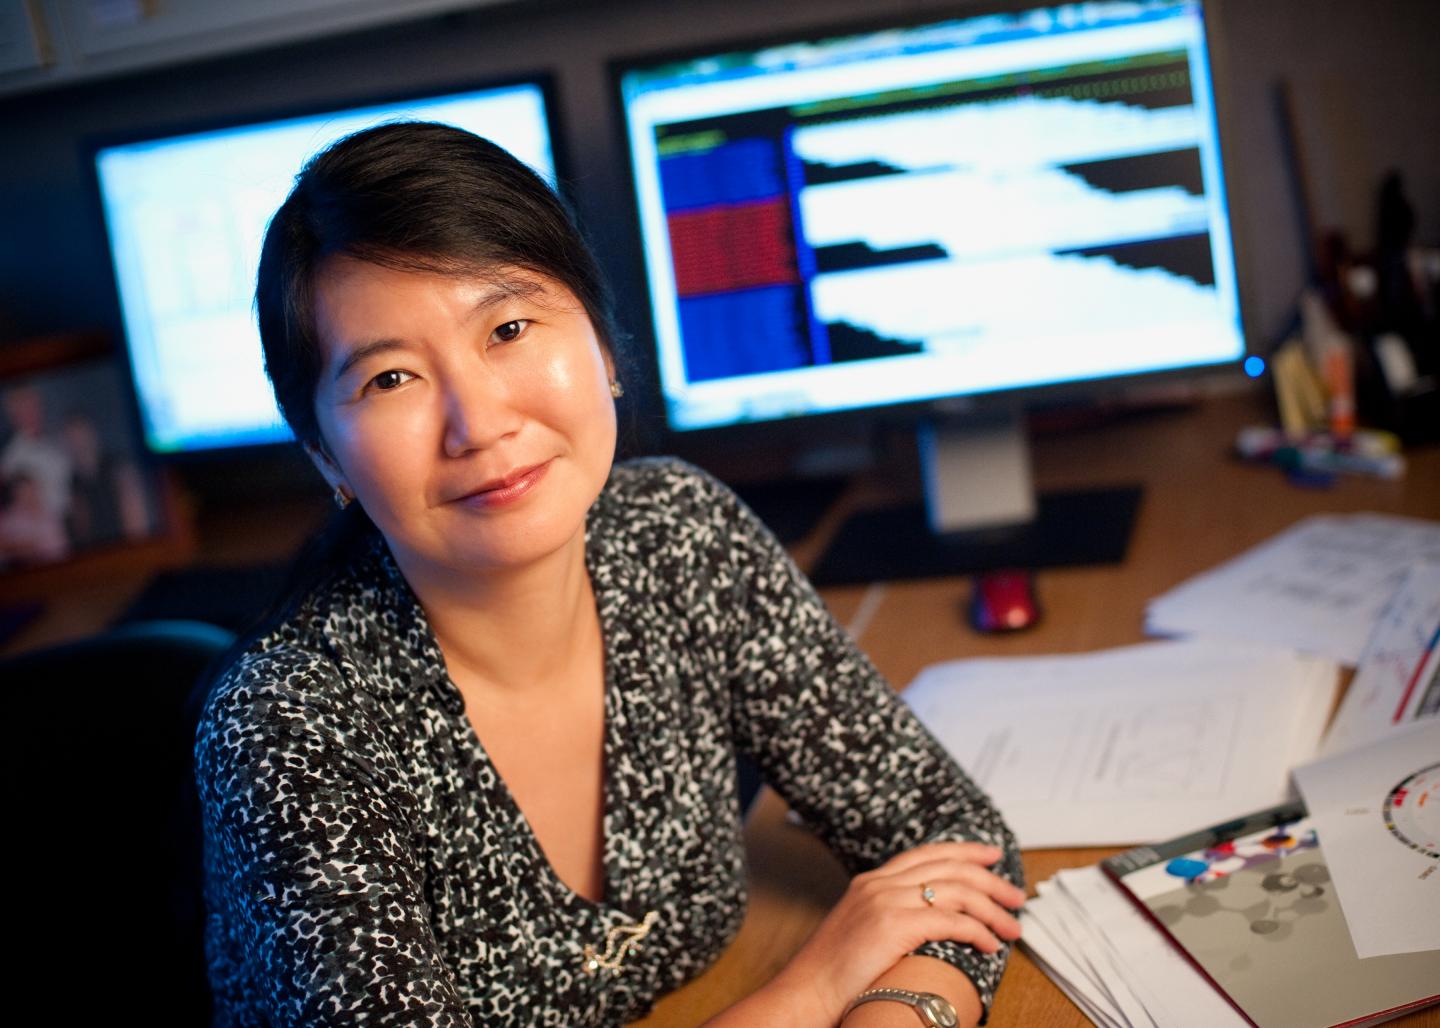 Jinghui Zhang, PhD